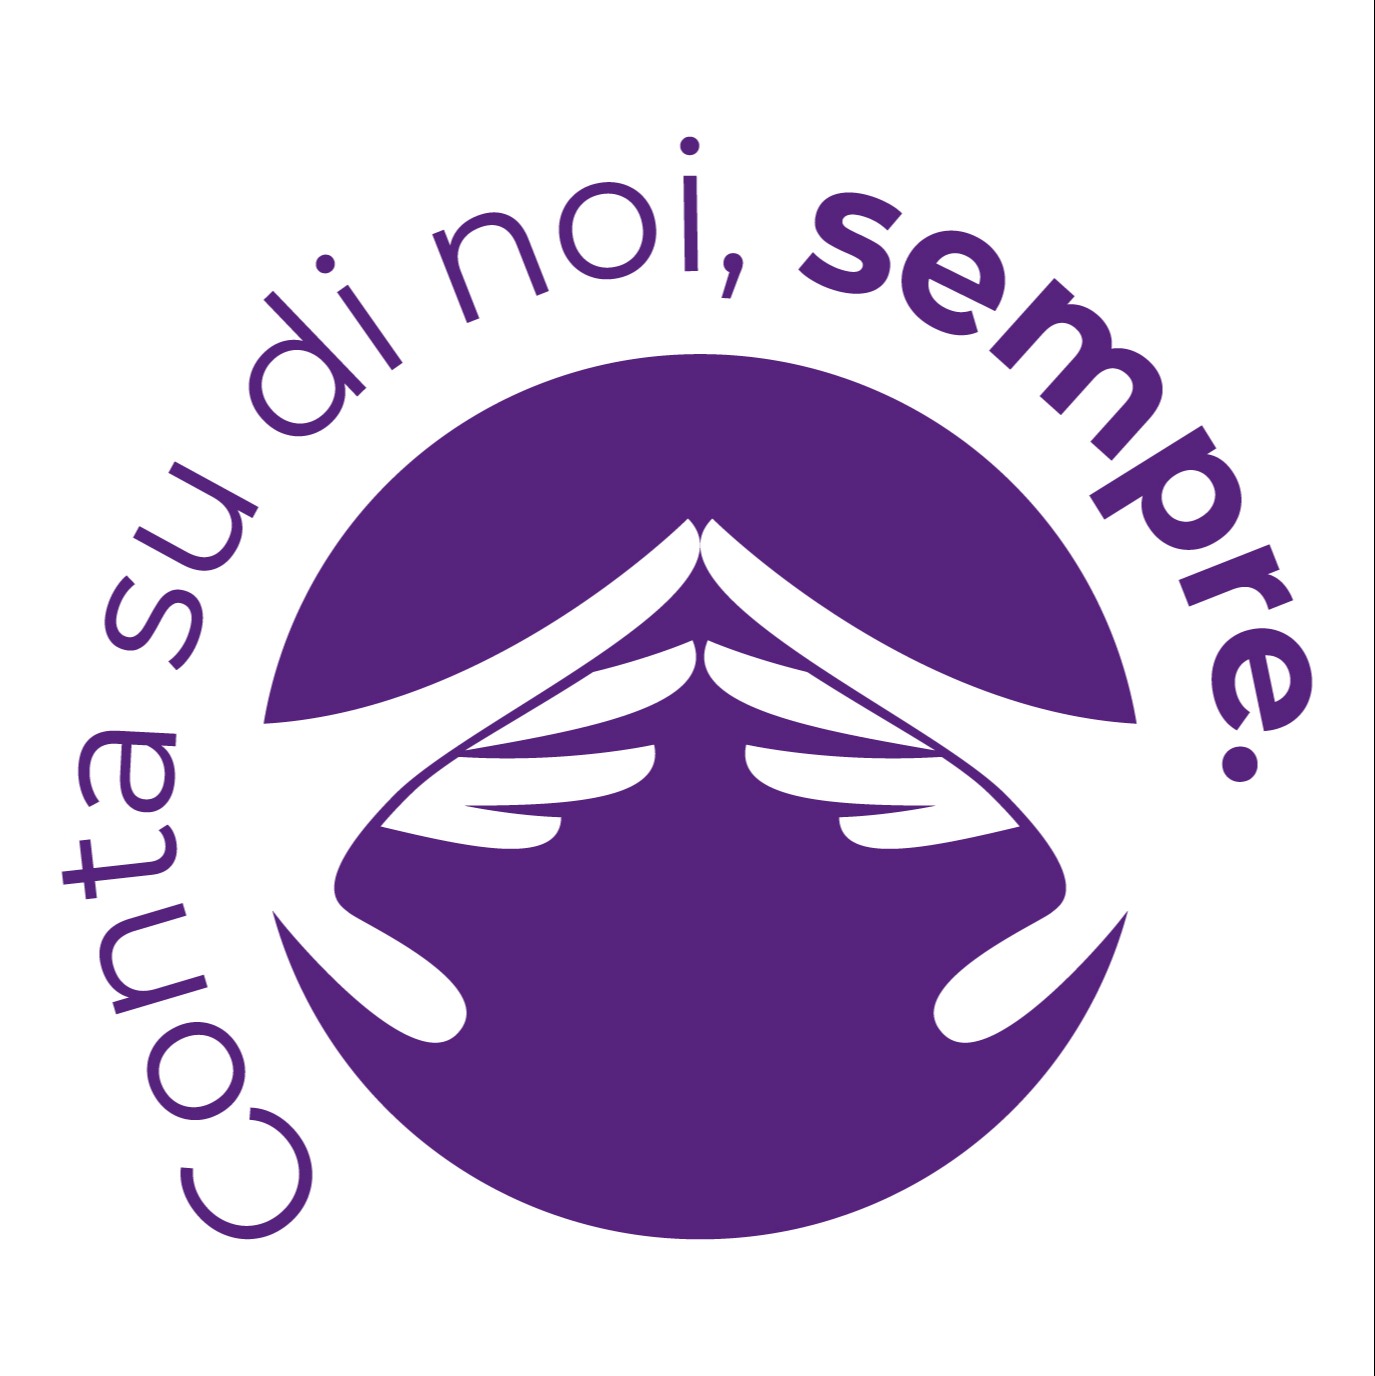 Fondazione Nadia Valsecchi logo